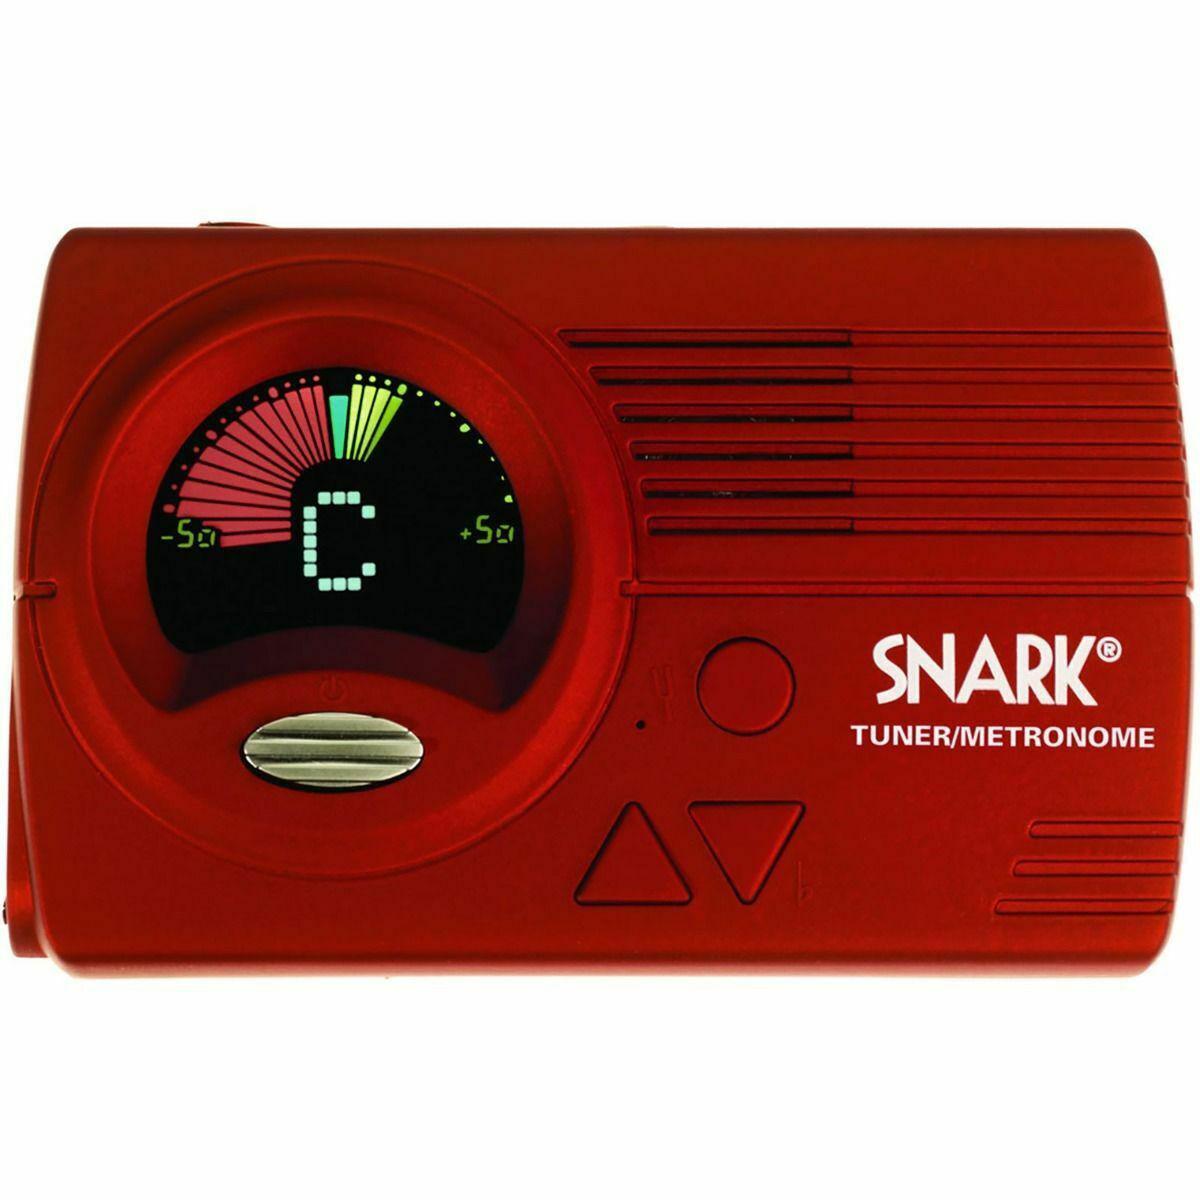 Snark - Afinador/Metronomo Cromatico, Color Rojo Mod.SN4_17